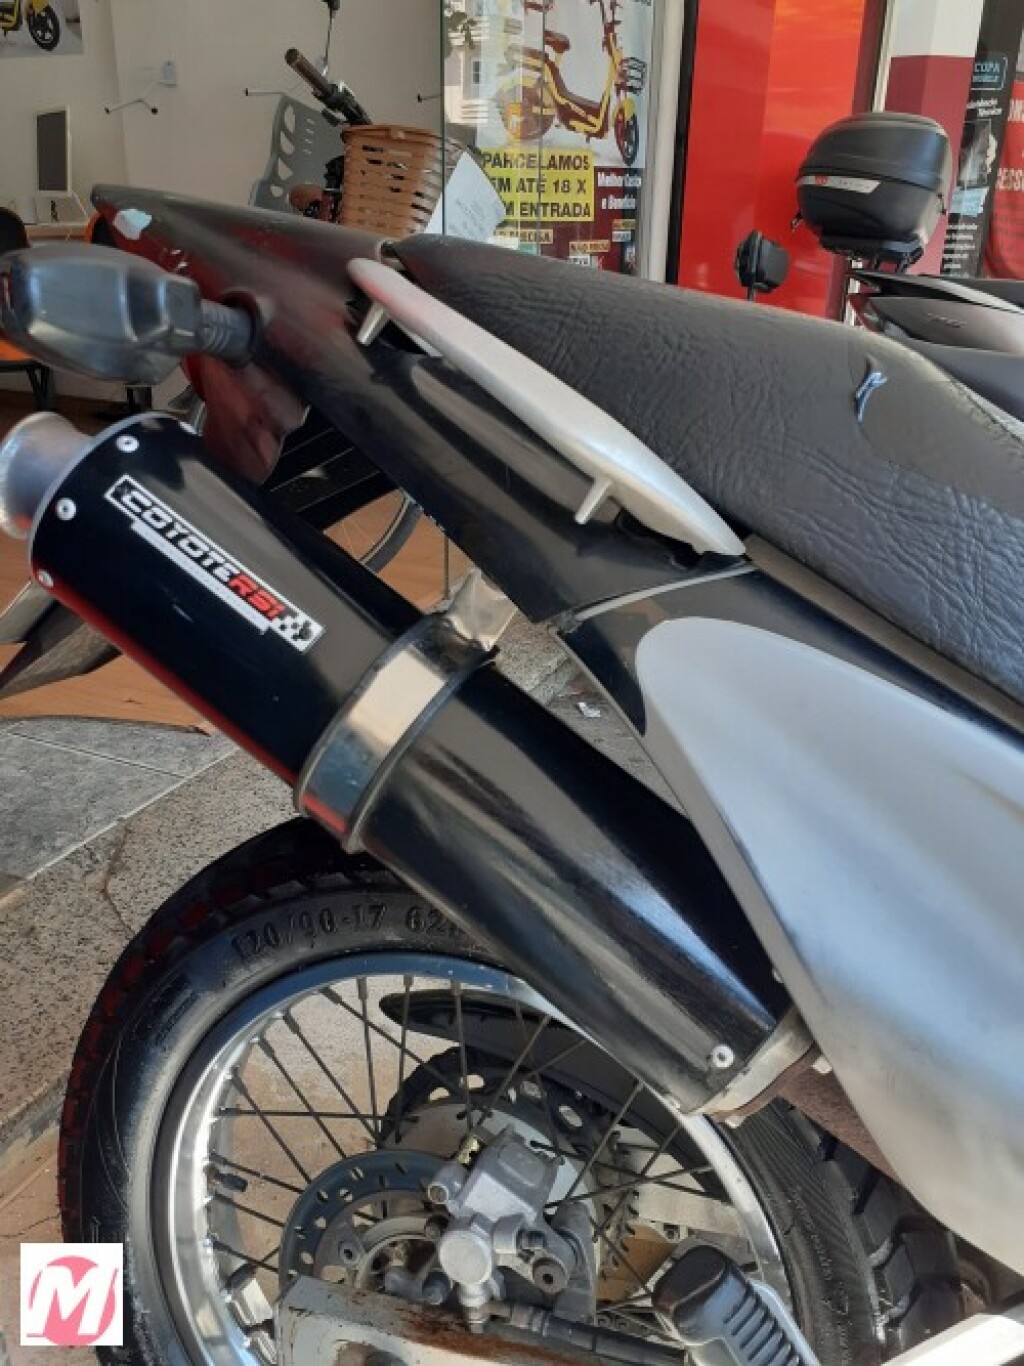 Motos Honda Cbx 250 Twister usadas, seminovas e novas a partir do ano 2000  em Minas Gerais